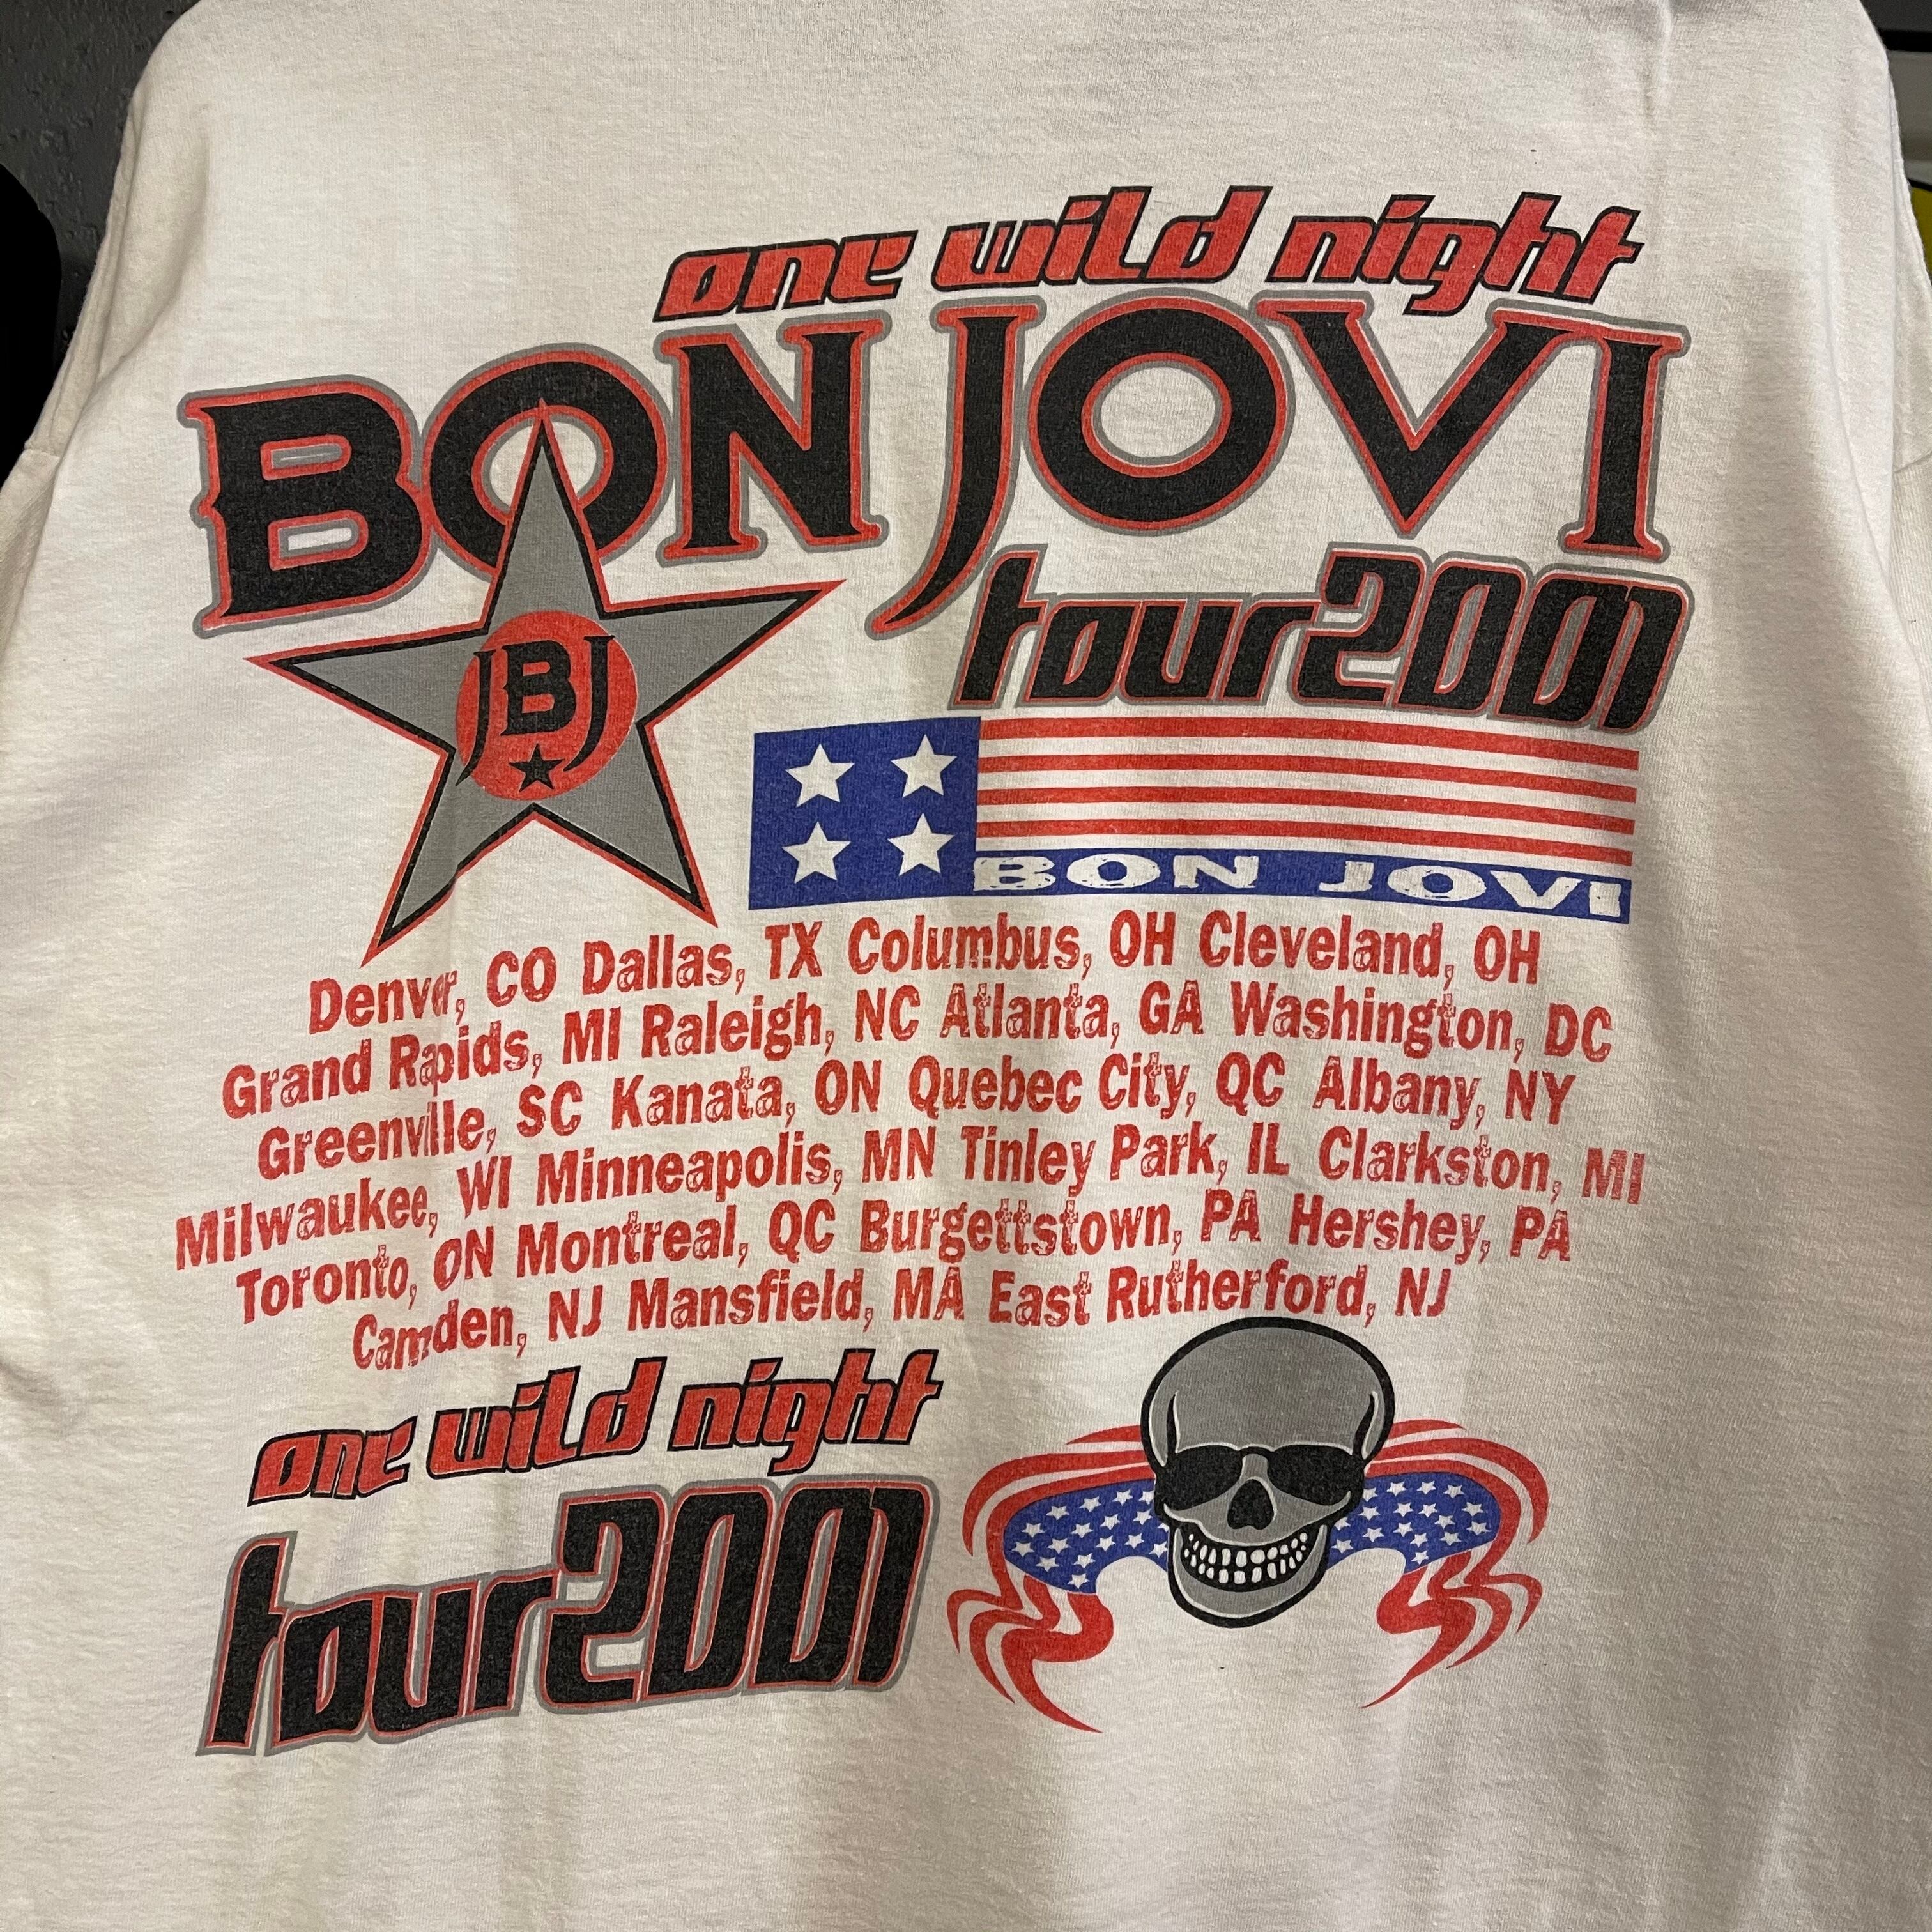 JON BON JOVI ボンジョヴィ USA製 anvil ボディ Tシャツ